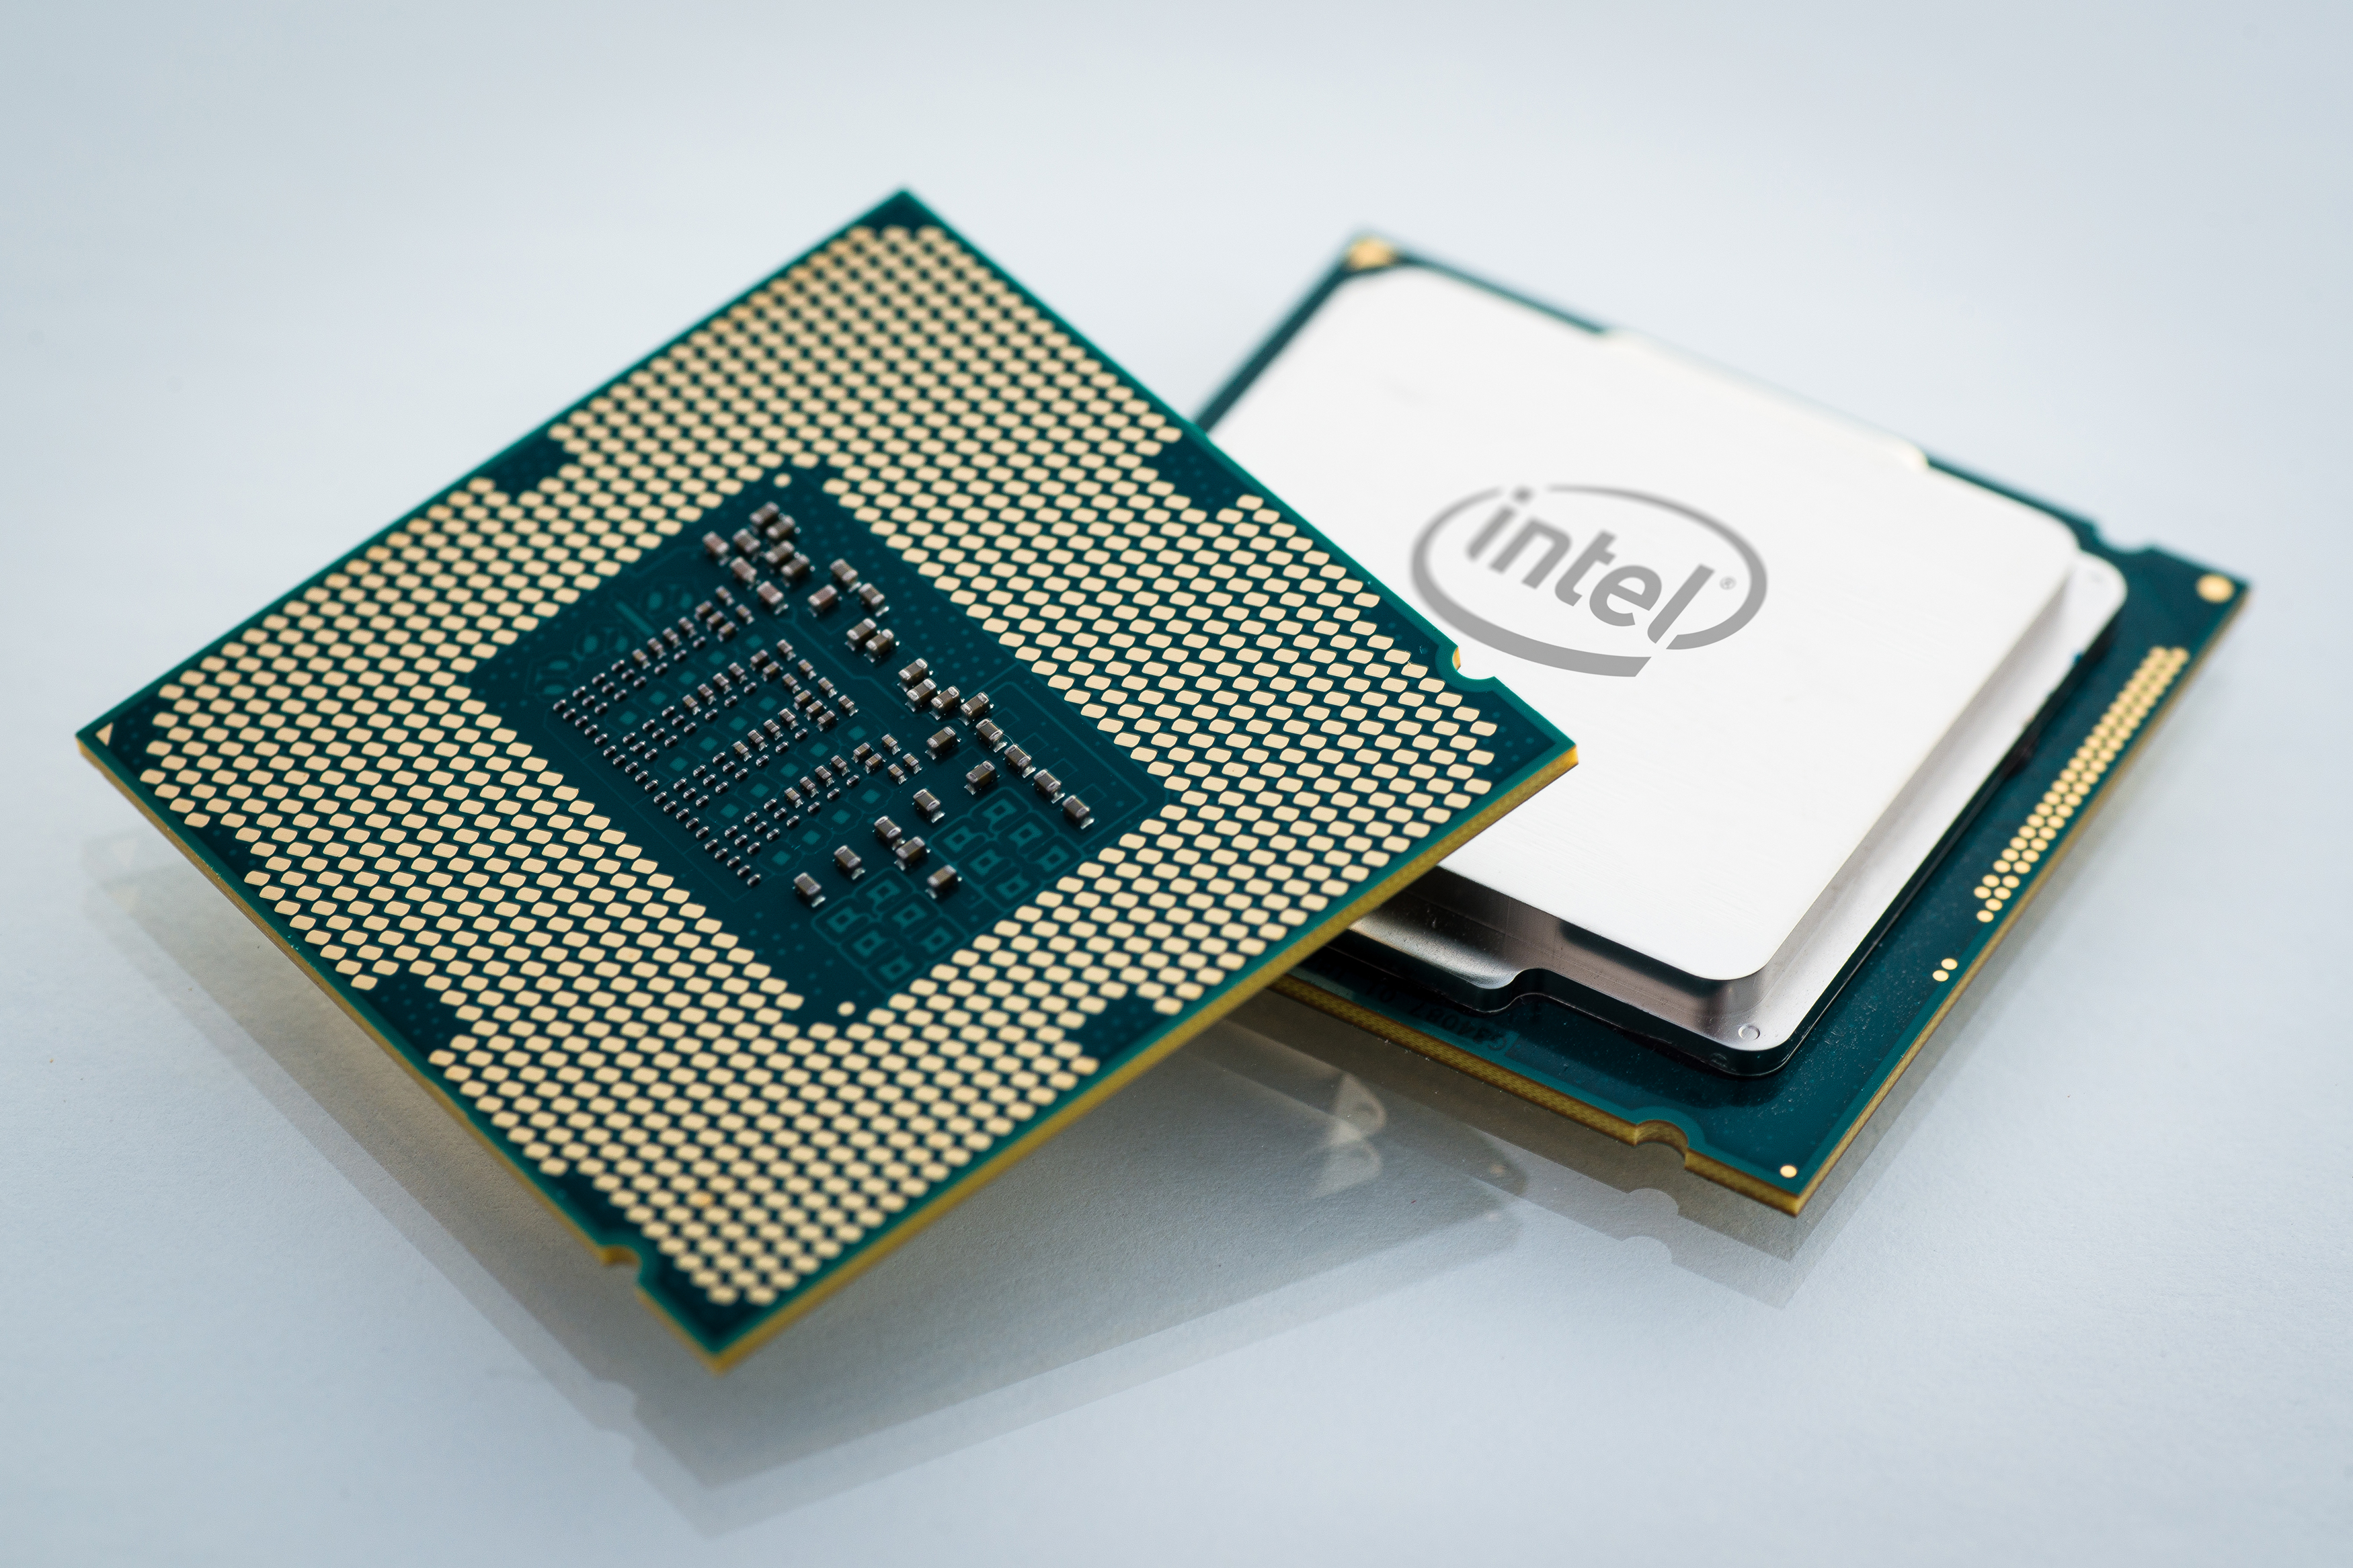 Immagine pubblicata in relazione al seguente contenuto: Overclocking: le nuove CPU Intel Devil's Canyon sono gi prenotabili | Nome immagine: news21219_Intel-CPU-Devils-Canyon_1.jpg